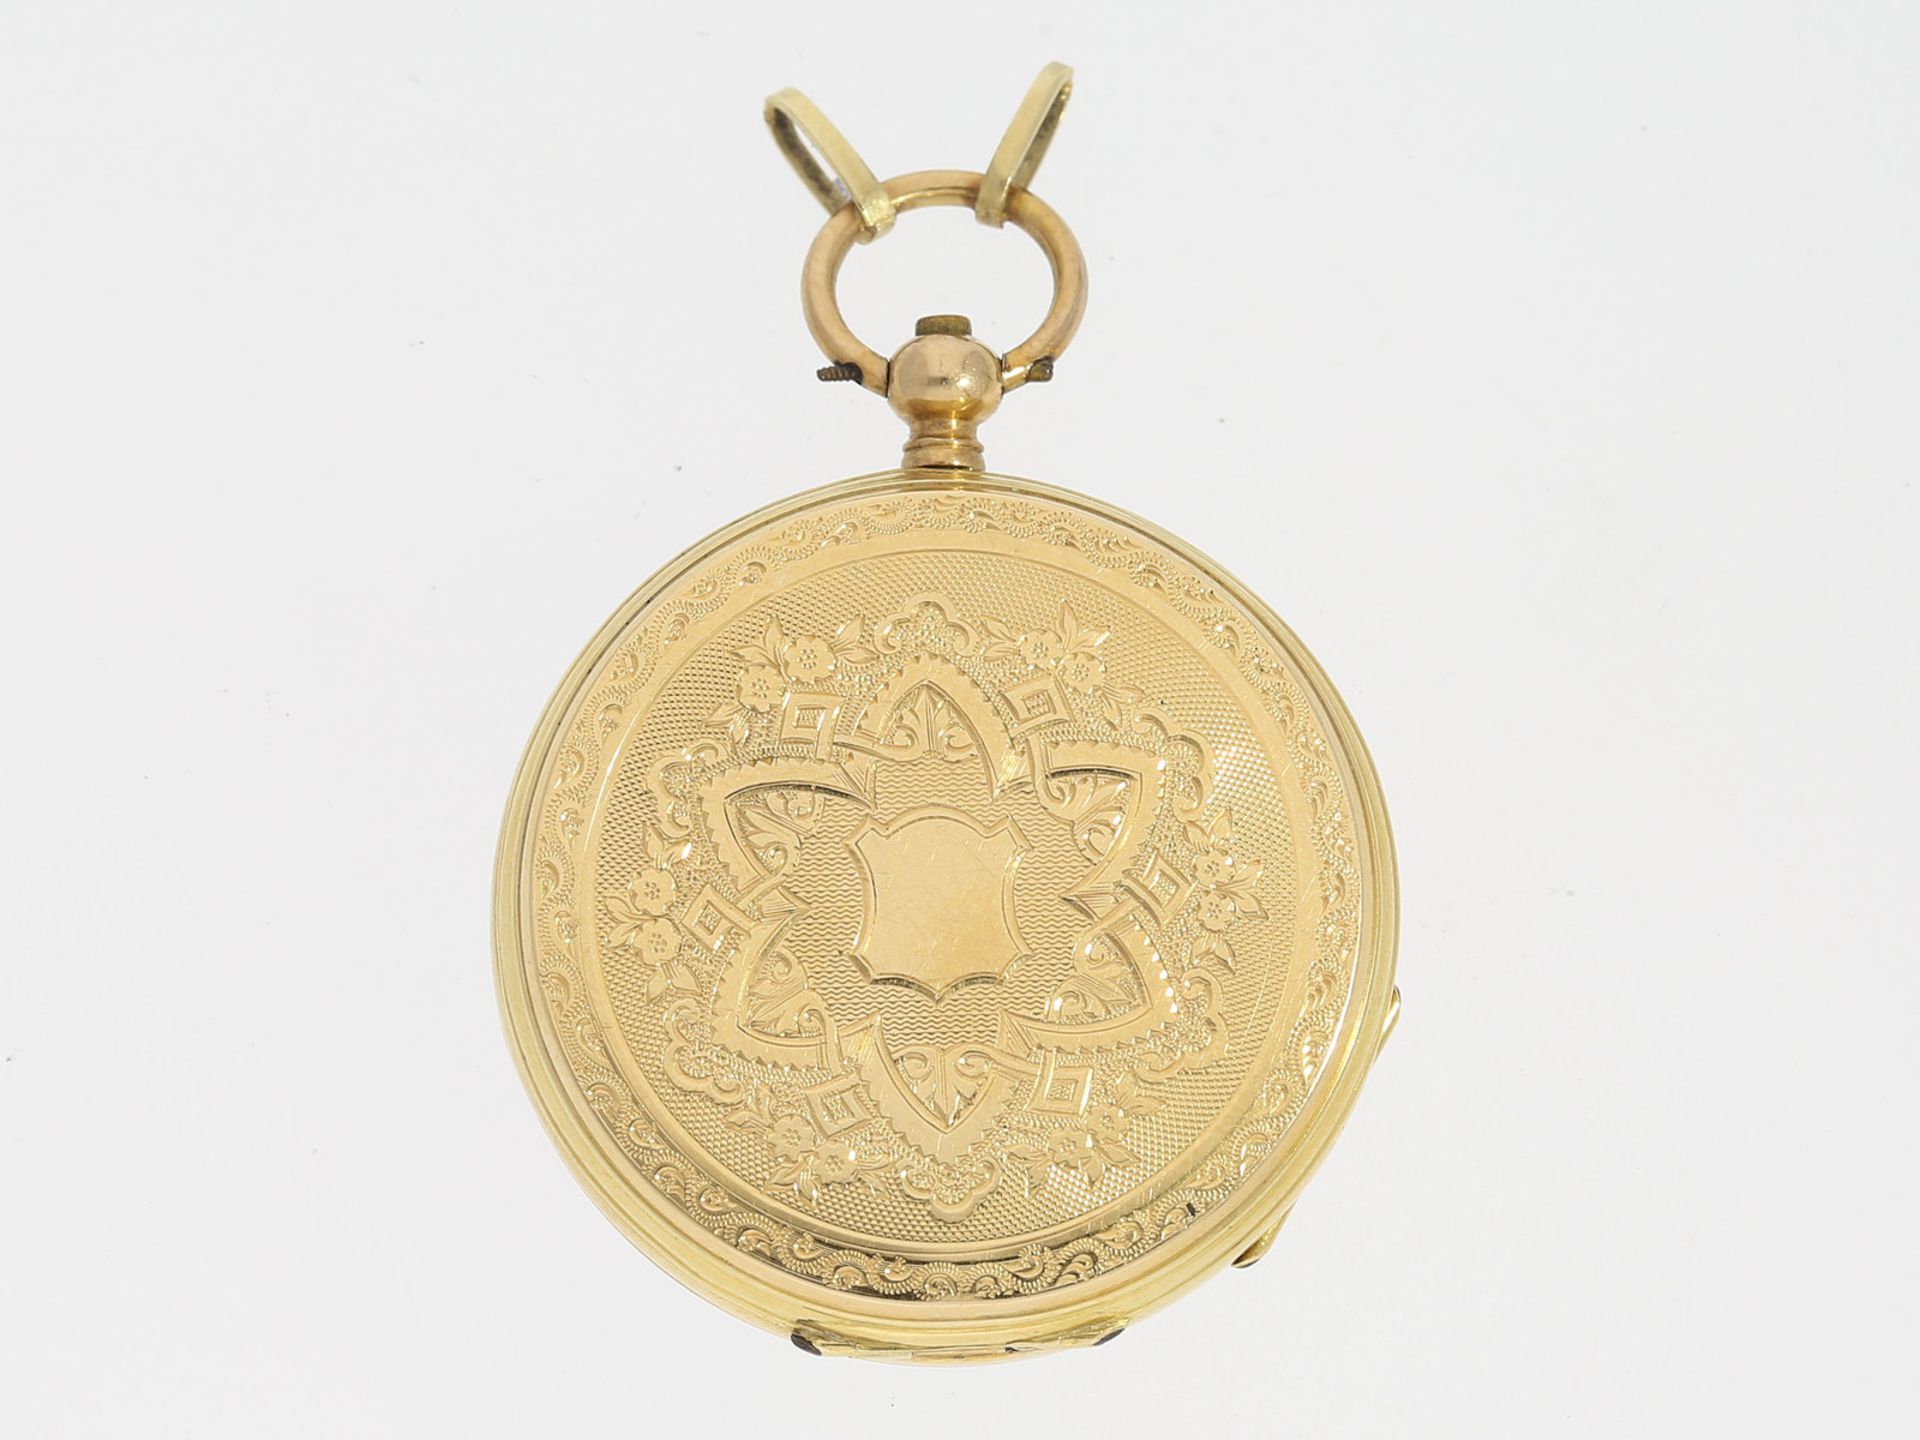 Taschenuhr/Anhängeuhr: sehr feine 18K Gold Taschenuhr/Anhängeuhr, um 1870Ca. Ø33,5mm, ca. 26g, 18K